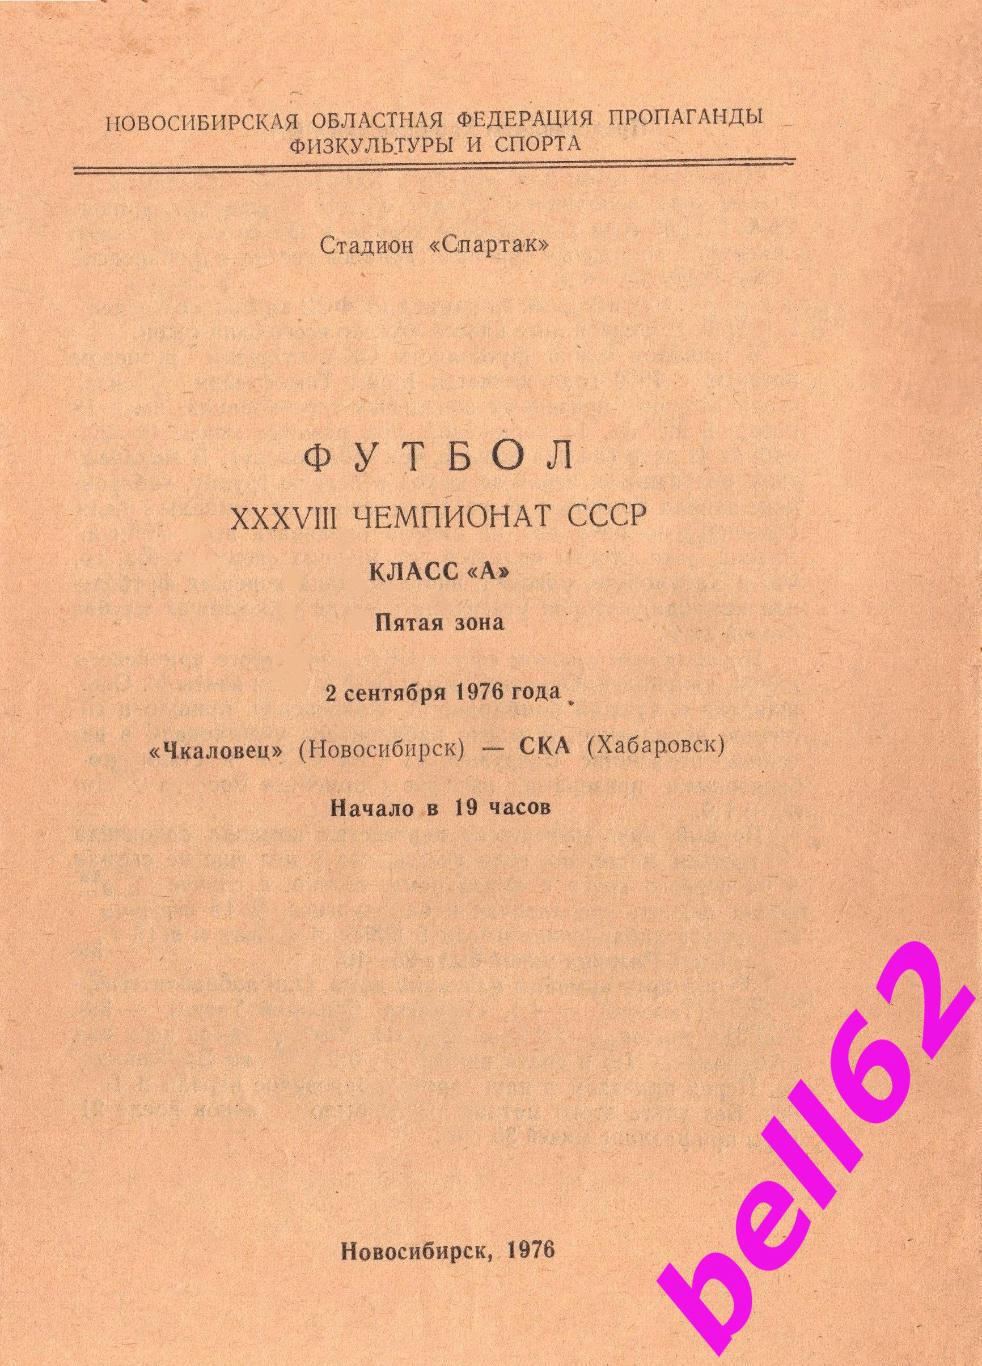 Чкаловец Новосибирск-СКА Хабаровск-02.09.1976 г. См. ниже.